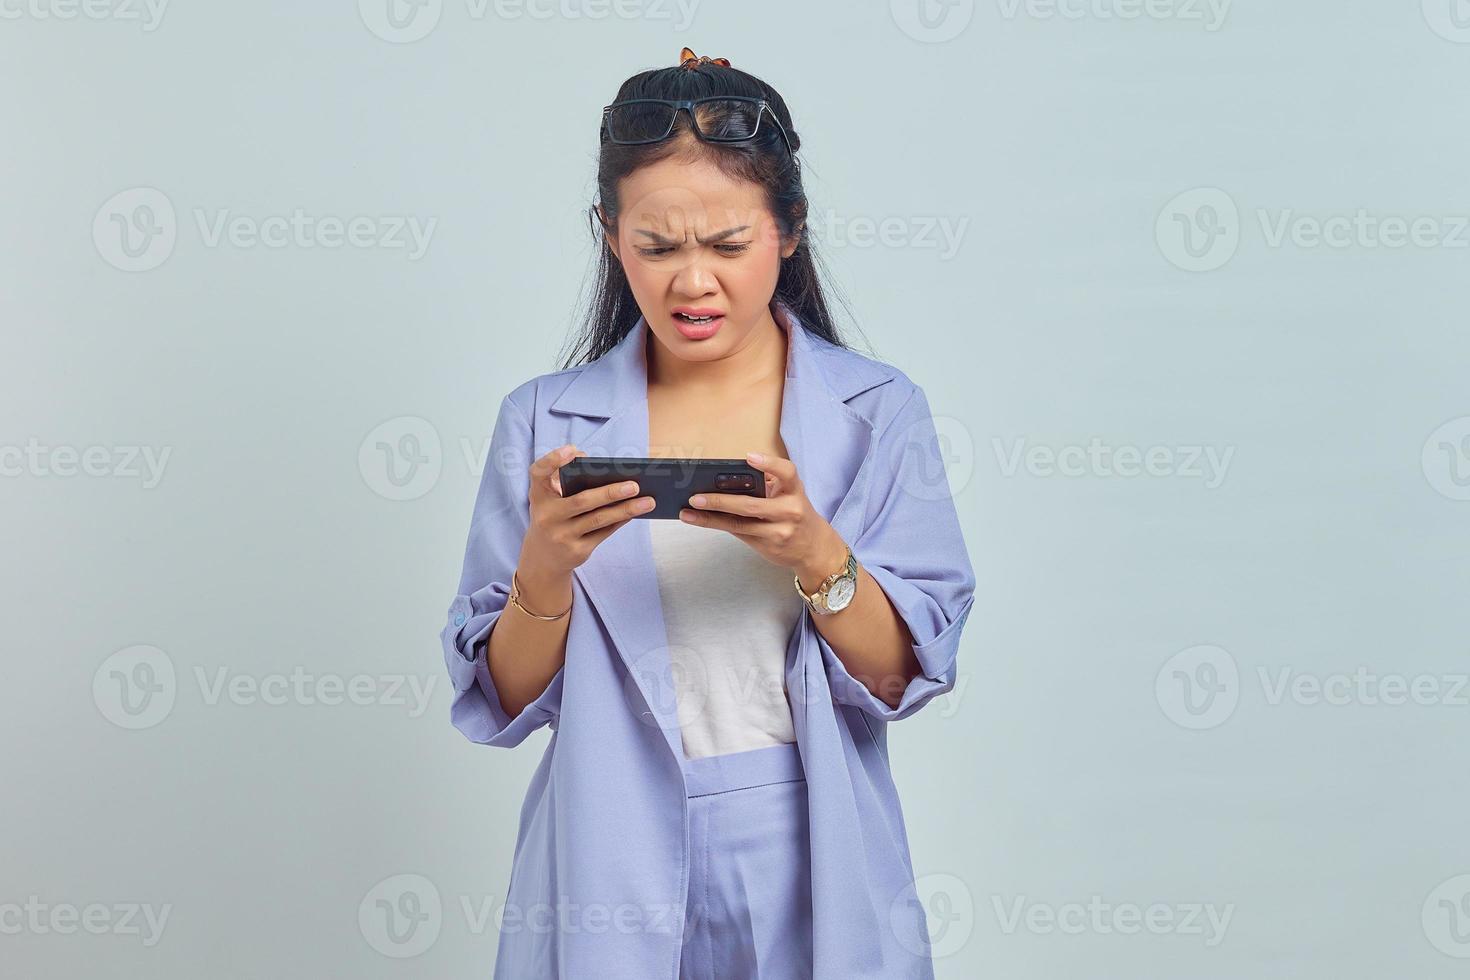 retrato de jovem asiática com raiva jogando no celular isolado no fundo branco foto